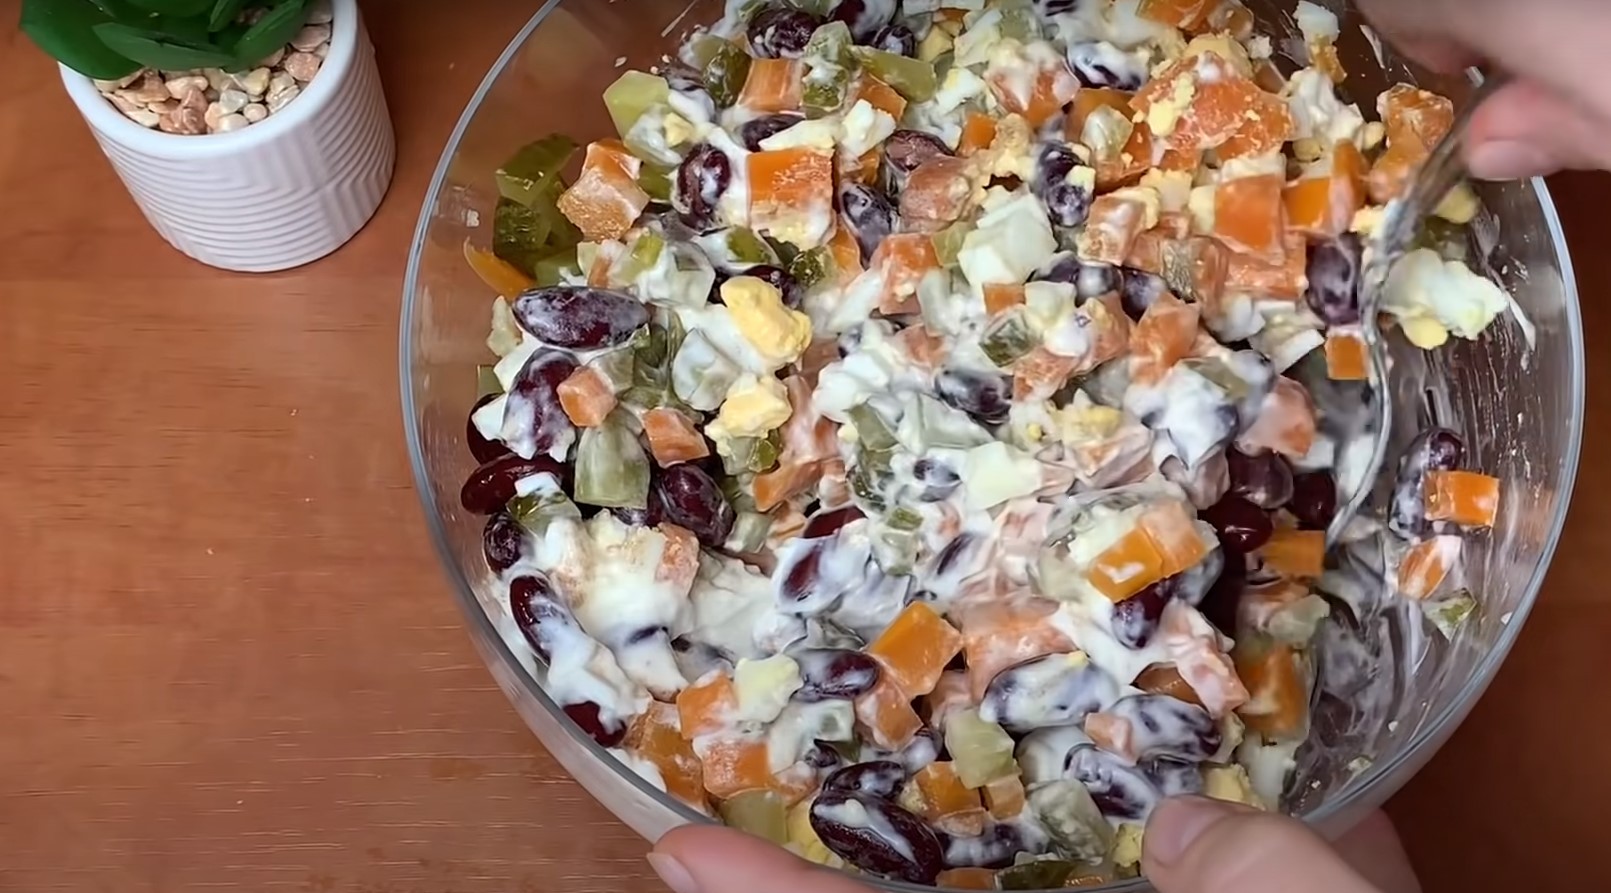 Салат с фасолью и крабовыми палочками - очень вкусный рецепт с фото